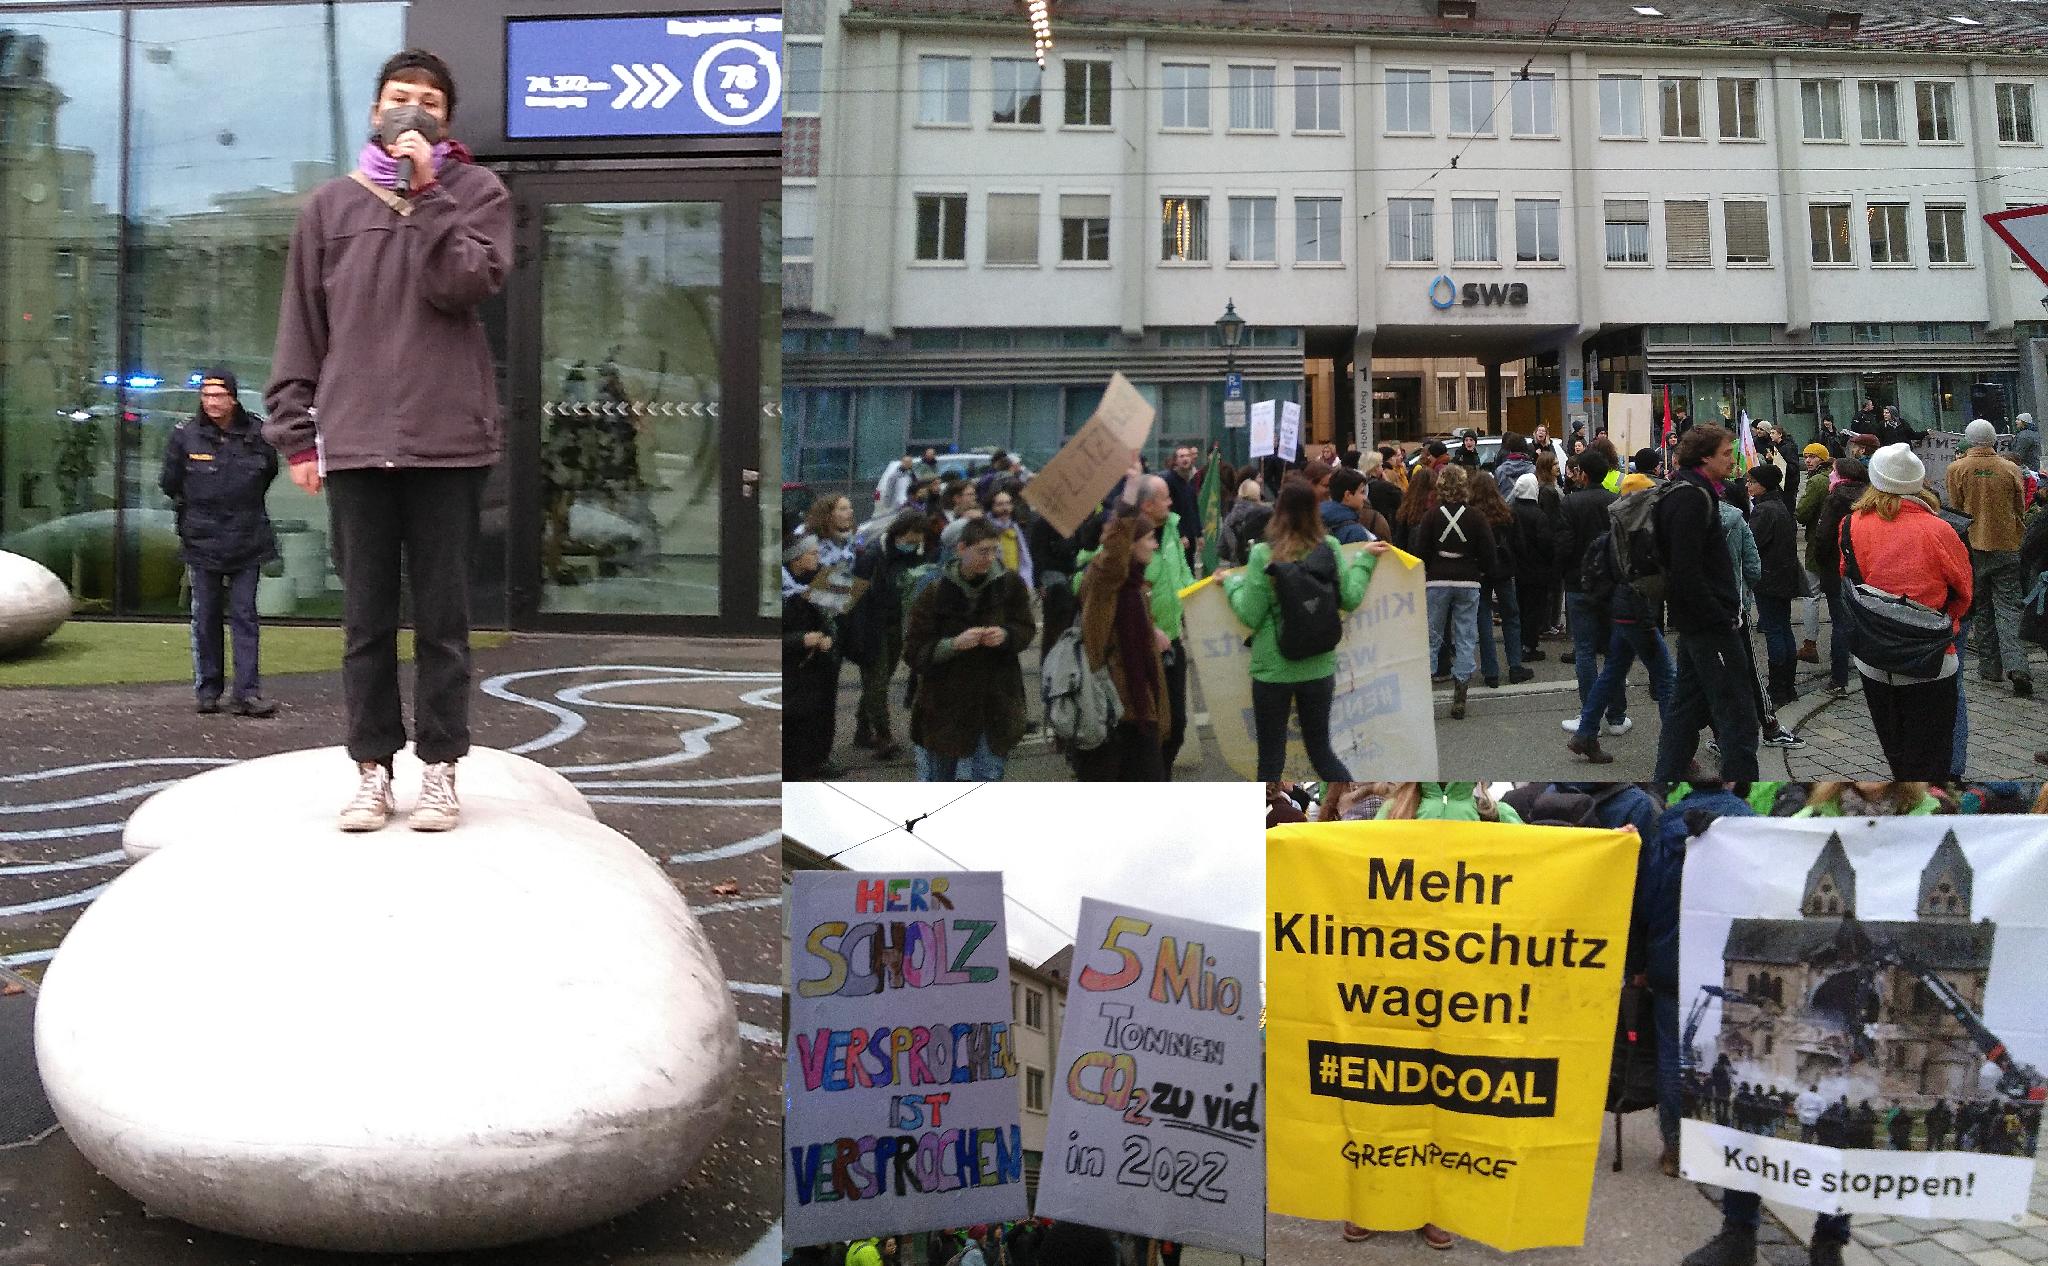 Eine Collage von Bildern der Demonstration: Die linke Seite zeigt ein Bild einer Aktivistin, die auf einem großen Stein vor dem Hauptgebäude von LEW in der Schaezlerstraße steht und eine Rede hält. Oben reichts zeigt eine große Menge Demonstrant*innen, die vor dem Hauptgebäude der Stadtwerke Augsburg im Hohen Weg demonstrieren. Unten in der Mitte sind zwei selbstgemalte Pappplakate zu sehen. Auf dem linken Plakat steht „HERR SCHOLZ VERSPROCHEN ist VERSPROCHEN“. Auf dem rechten Plakat steht „5 Millionen Tonnen CO₂ zu viel in 2022“. Das Bild unten rechts zeigt zwei Banner. Auf dem linken Banner steht: „Mehr Klimschutz wagen! #ENDCOAL *GREENPEACE*“. Auf dem rechten Banner ist ein Foto zu sehen, auf dem mehrere Menschen den Abriss eines schönen alten Gebäudes beobachten. Mutmaßlich wird das Gebäude zur Erweiterung eines Tagesbaus abgerissen. Unter dem Foto auf dem Banner steht „Kohle stoppen!“.